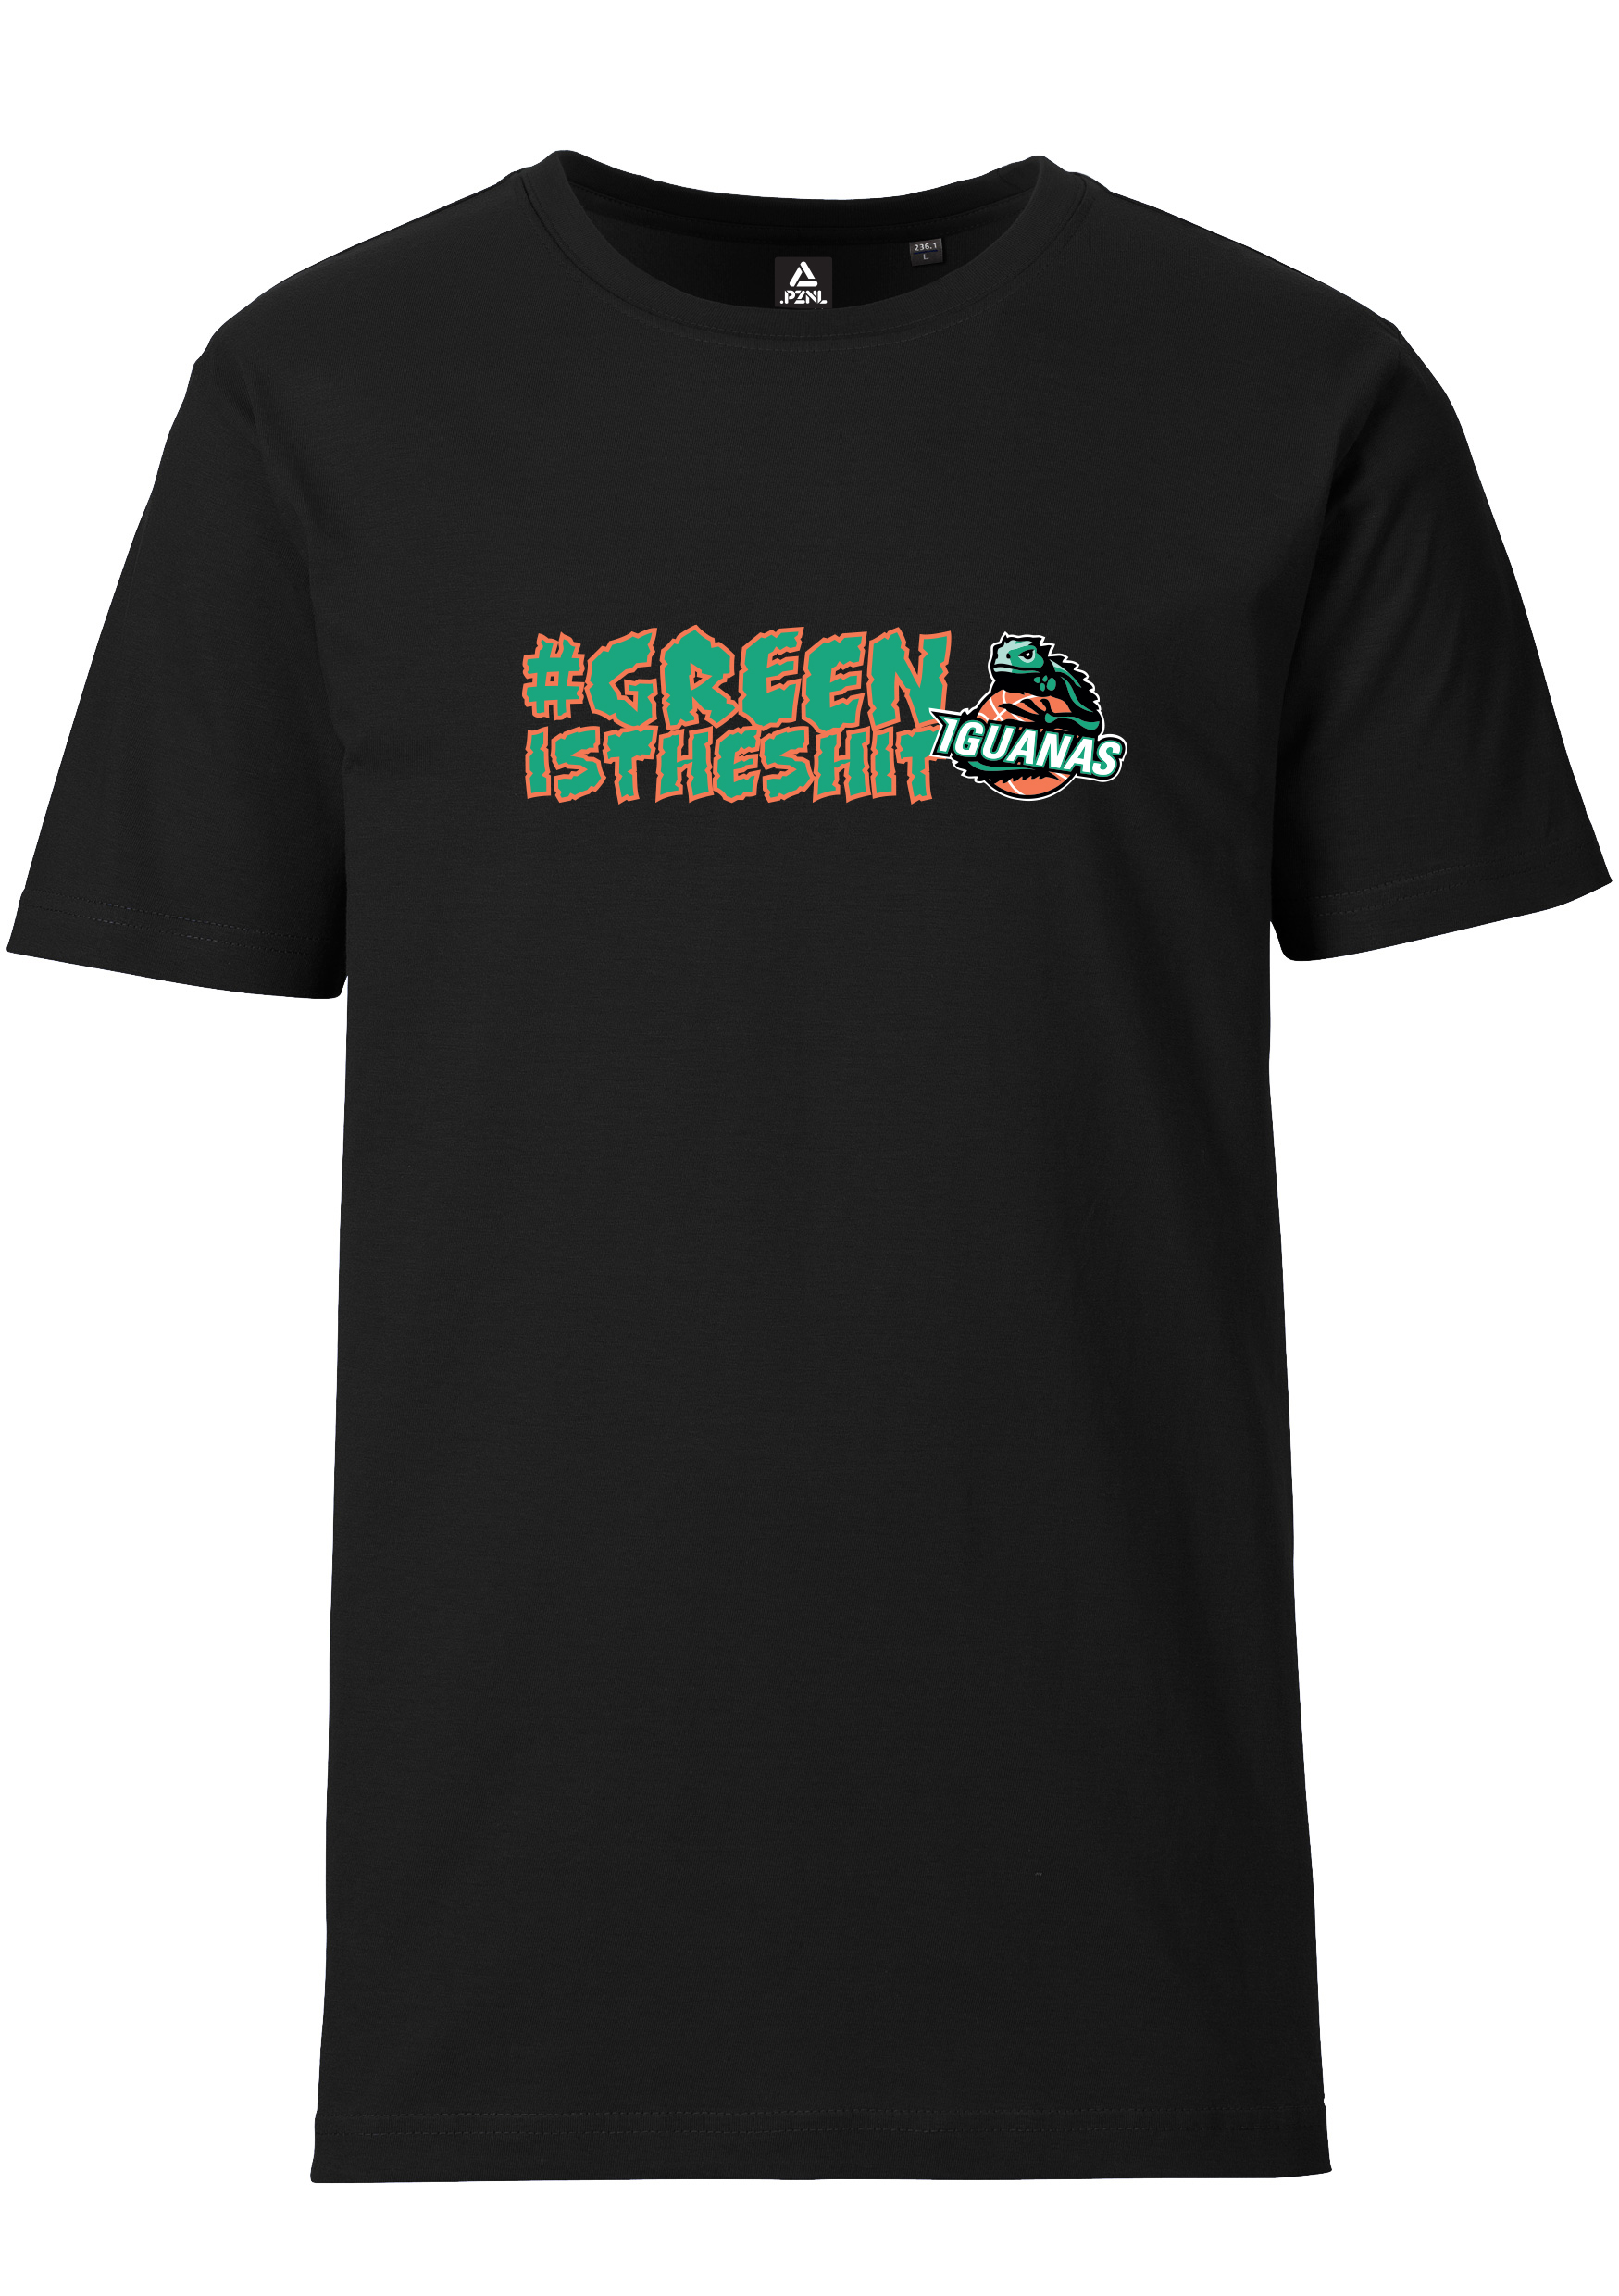 Iguanas T-Shirt Herren #greenistheshit